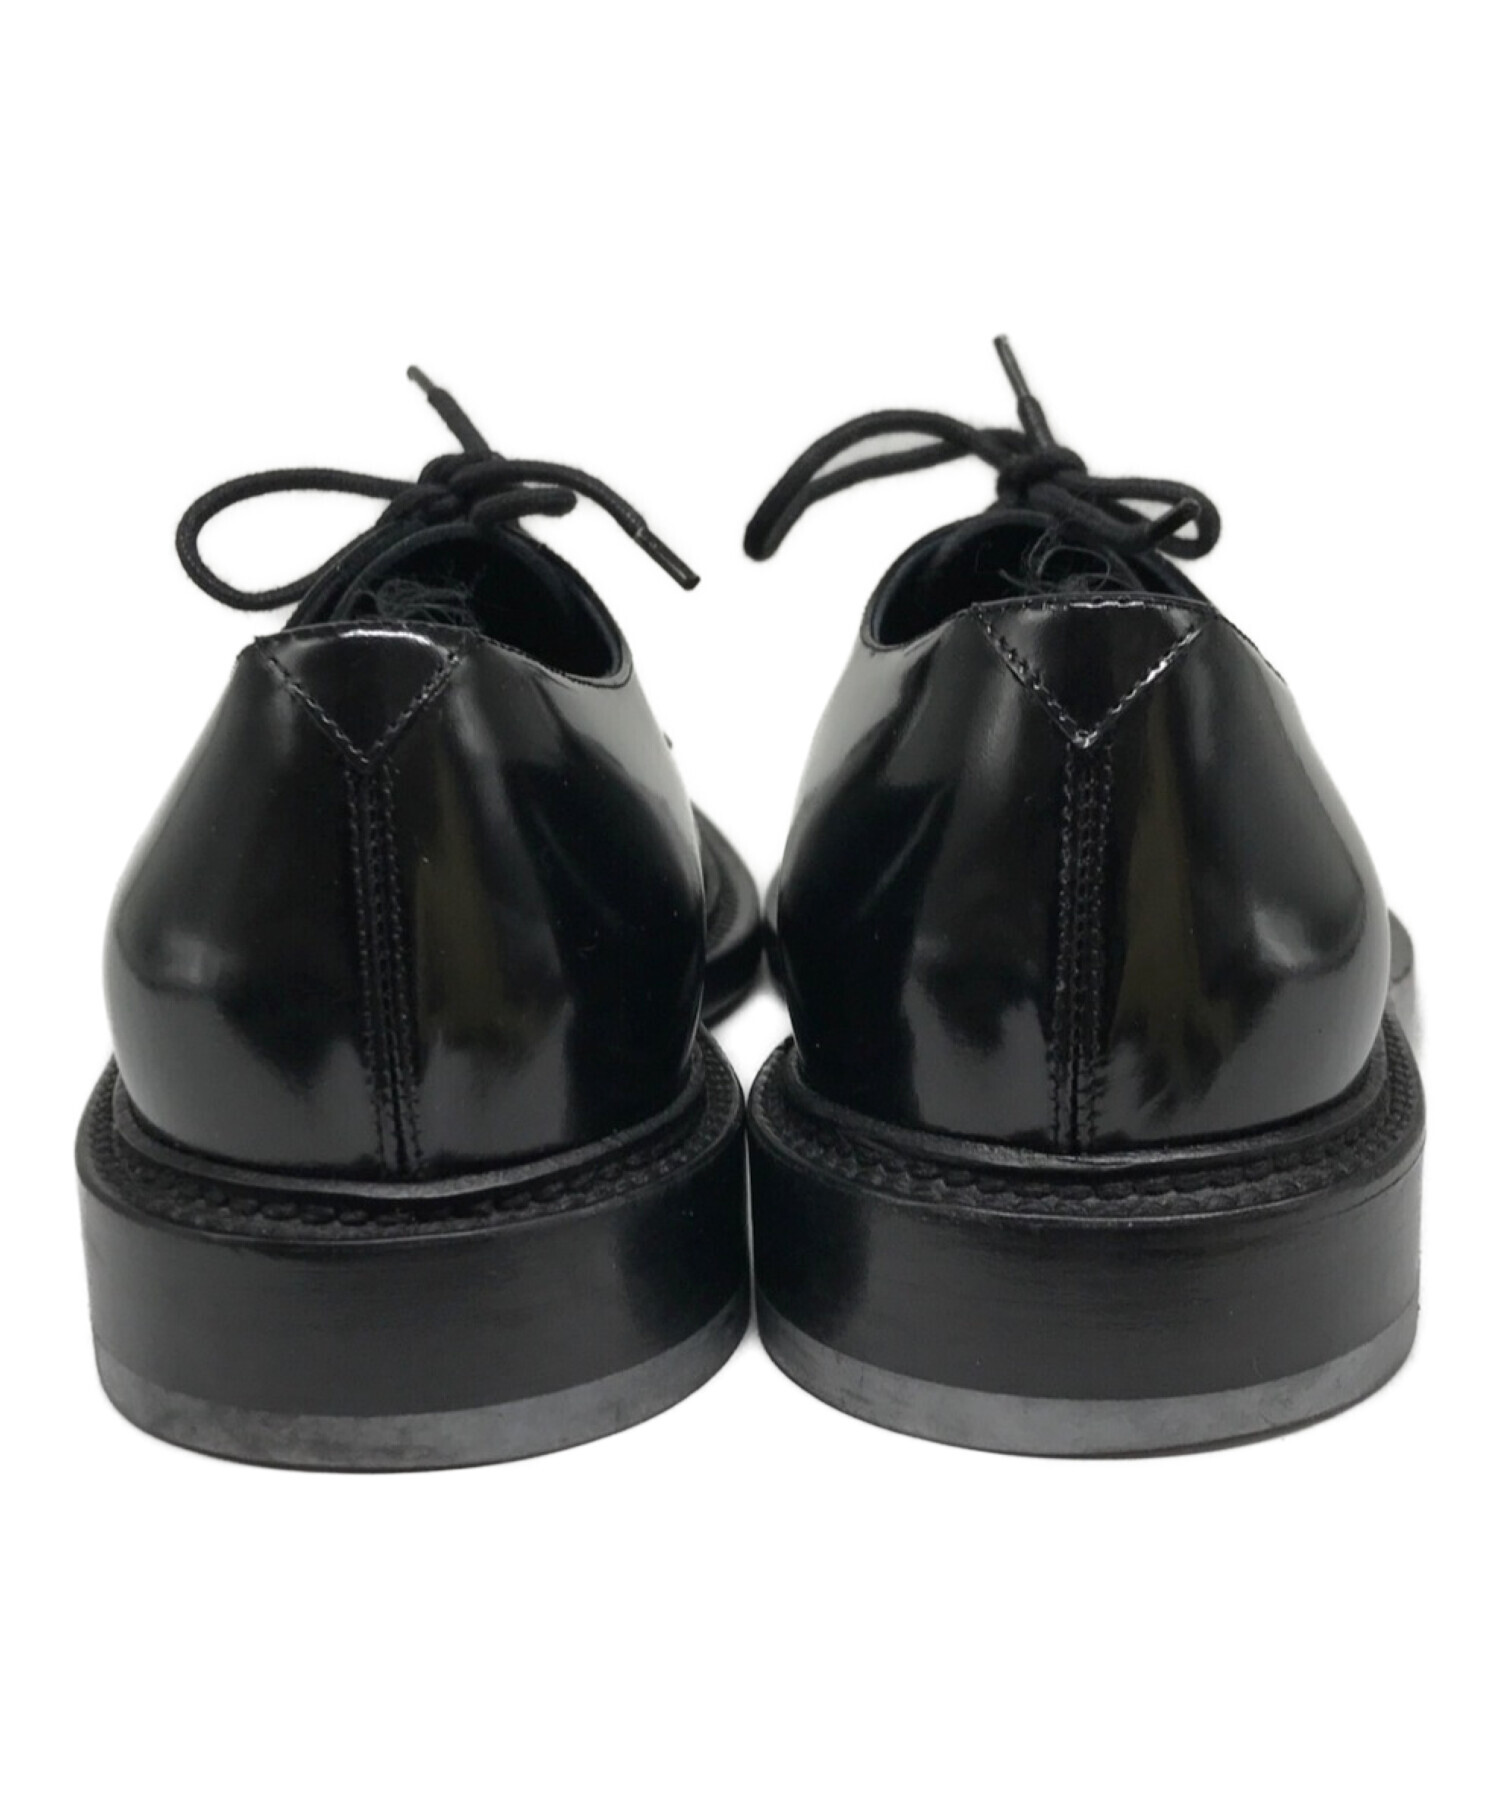 著しく状態の悪い物【新品】SAINT LAURENT プレーントゥ パテント 革靴 38.5